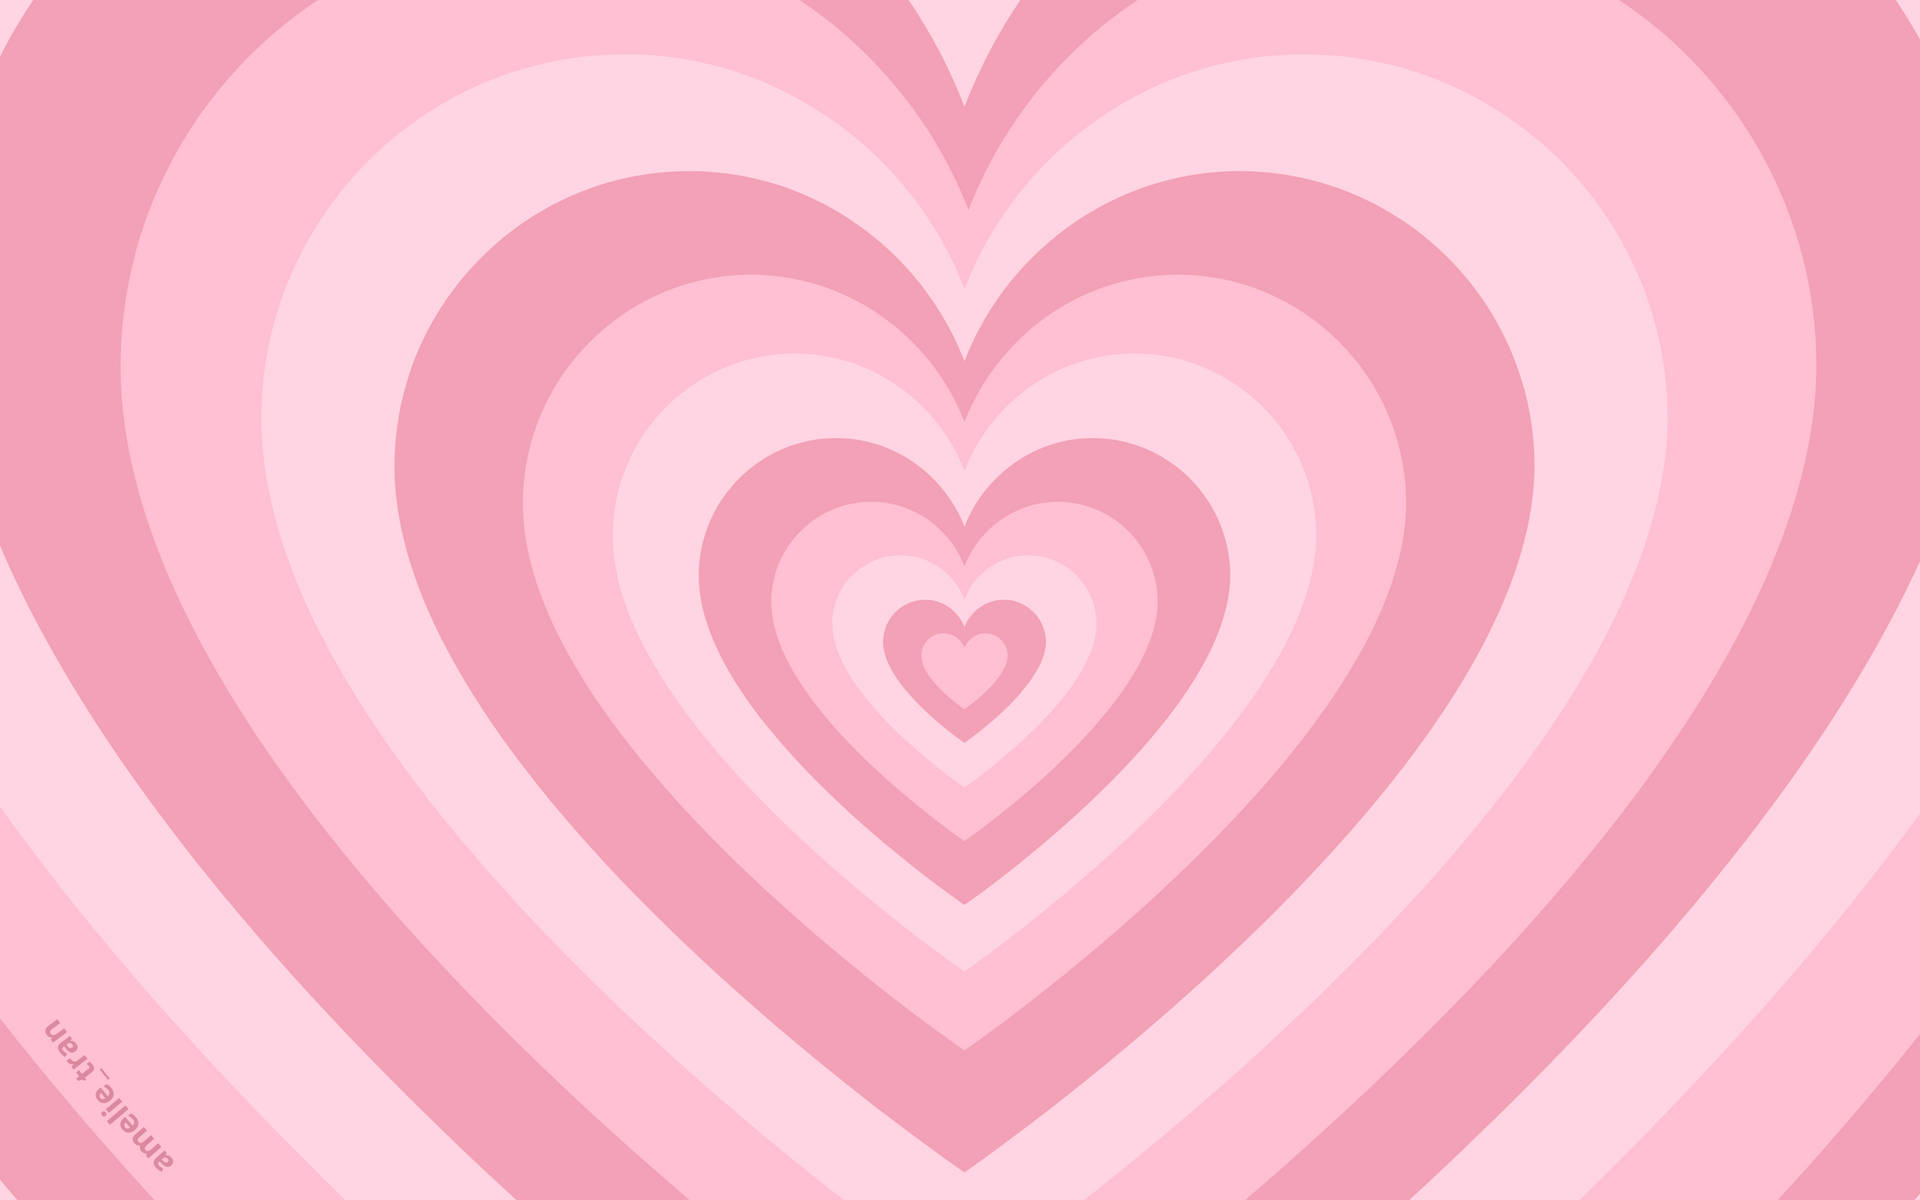 Pale Pink Wildflower Heart Wallpaper